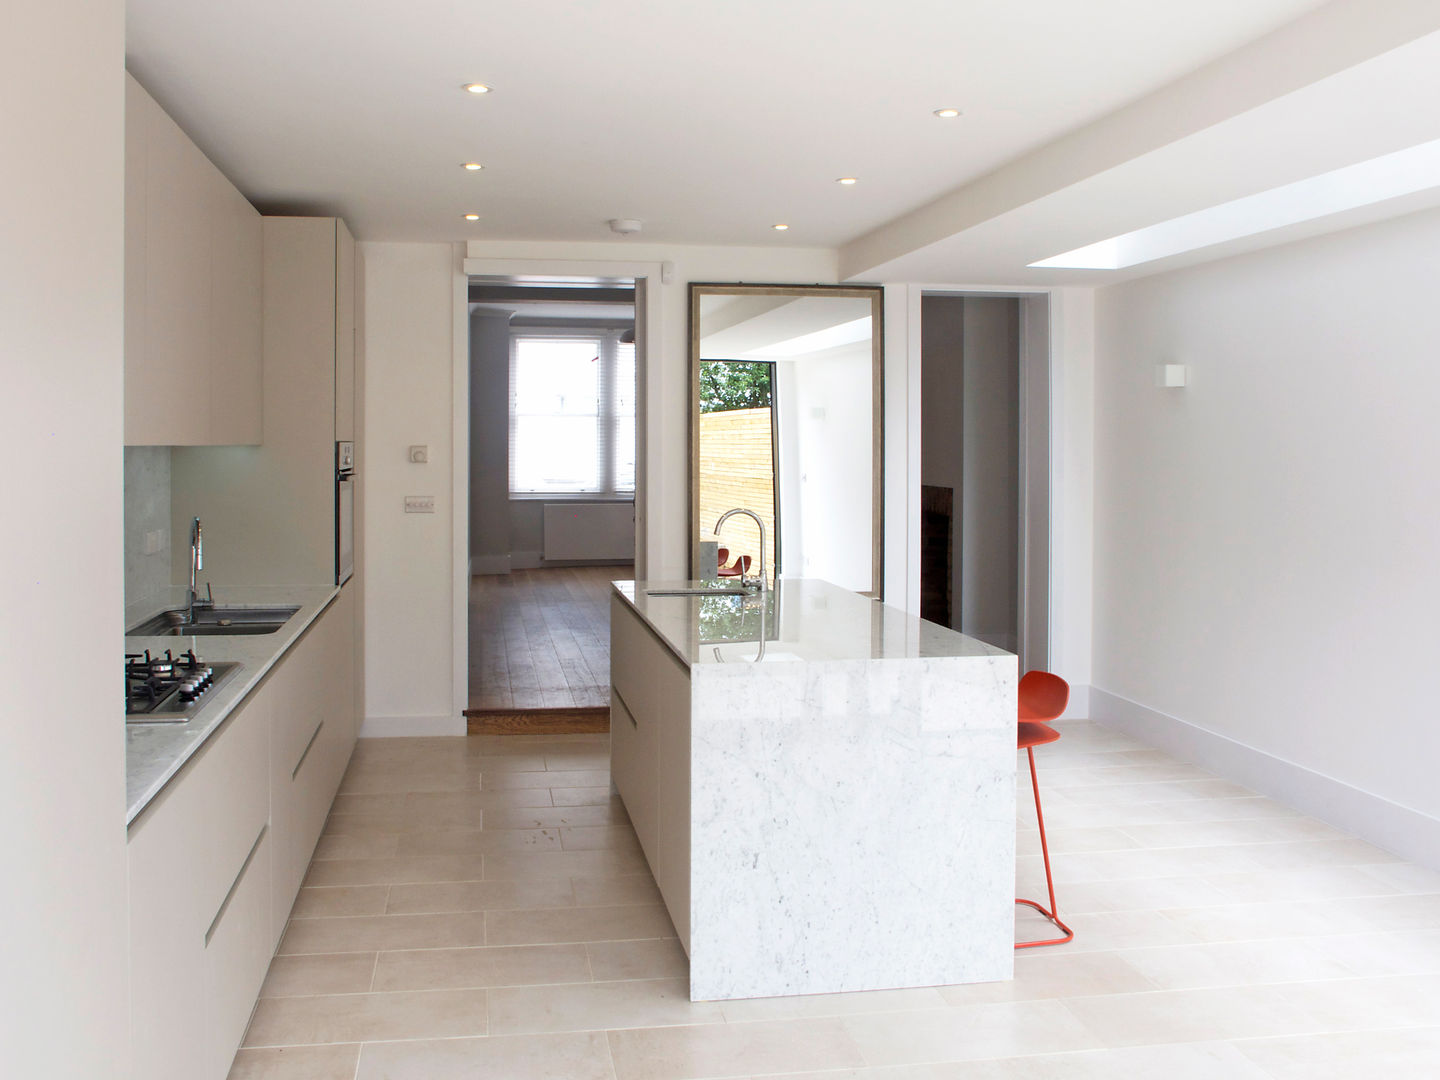 Londra, Ristrutturazione casa privata, Loop Interior Loop Interior Cucina moderna cucina a isola, marmo di Carrara, giardino comunicante, casa con giardino